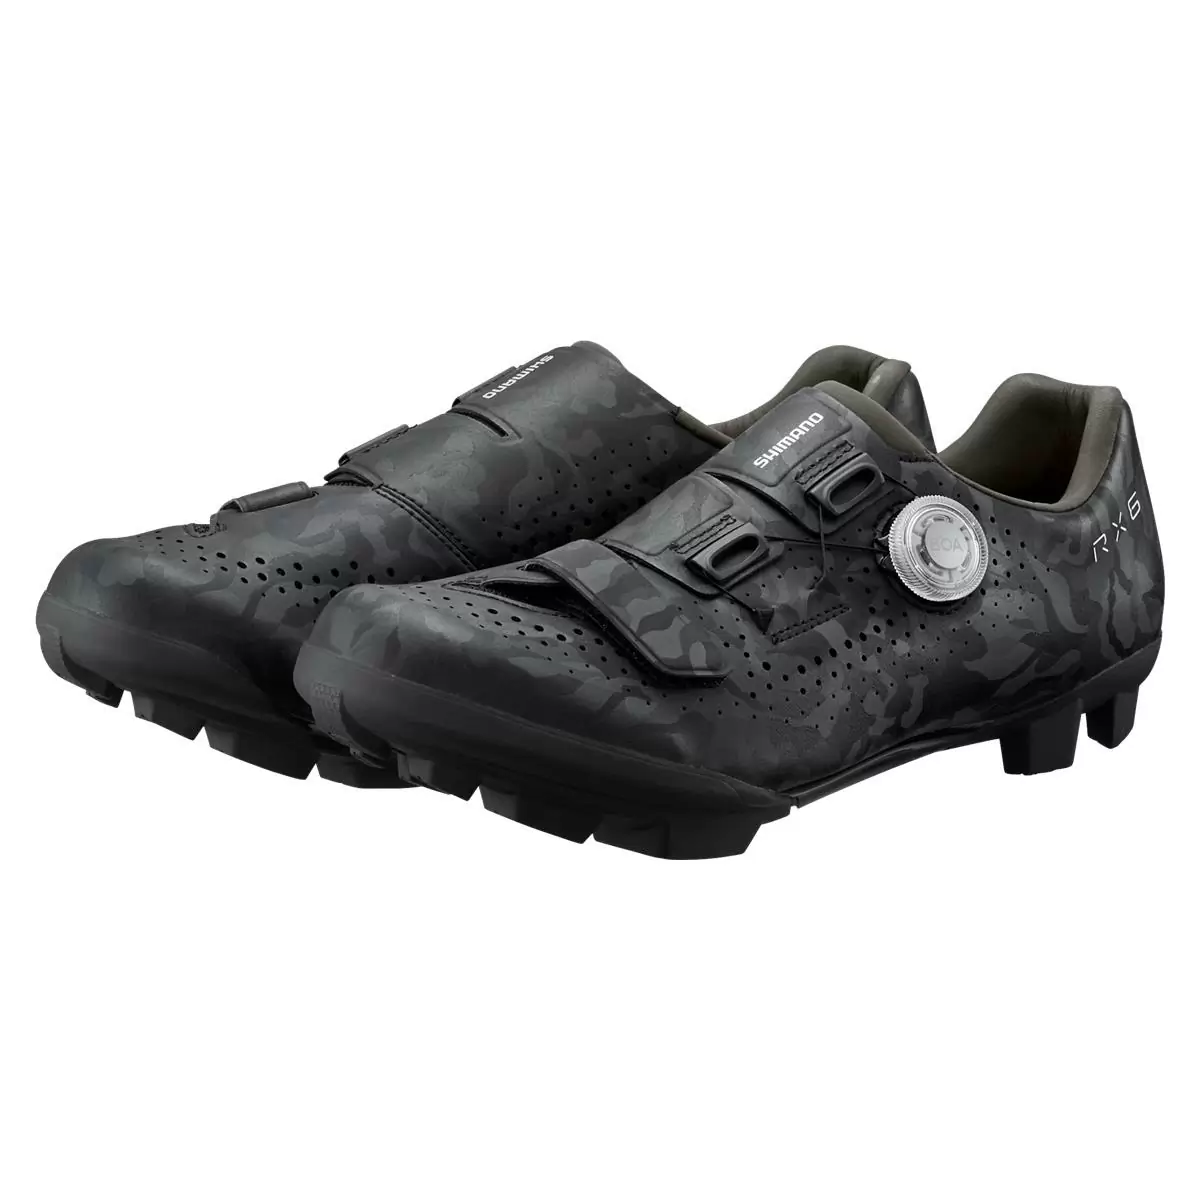 MTB / Gravel Shoes SH-RX600 RX6 Black Size 46 #3